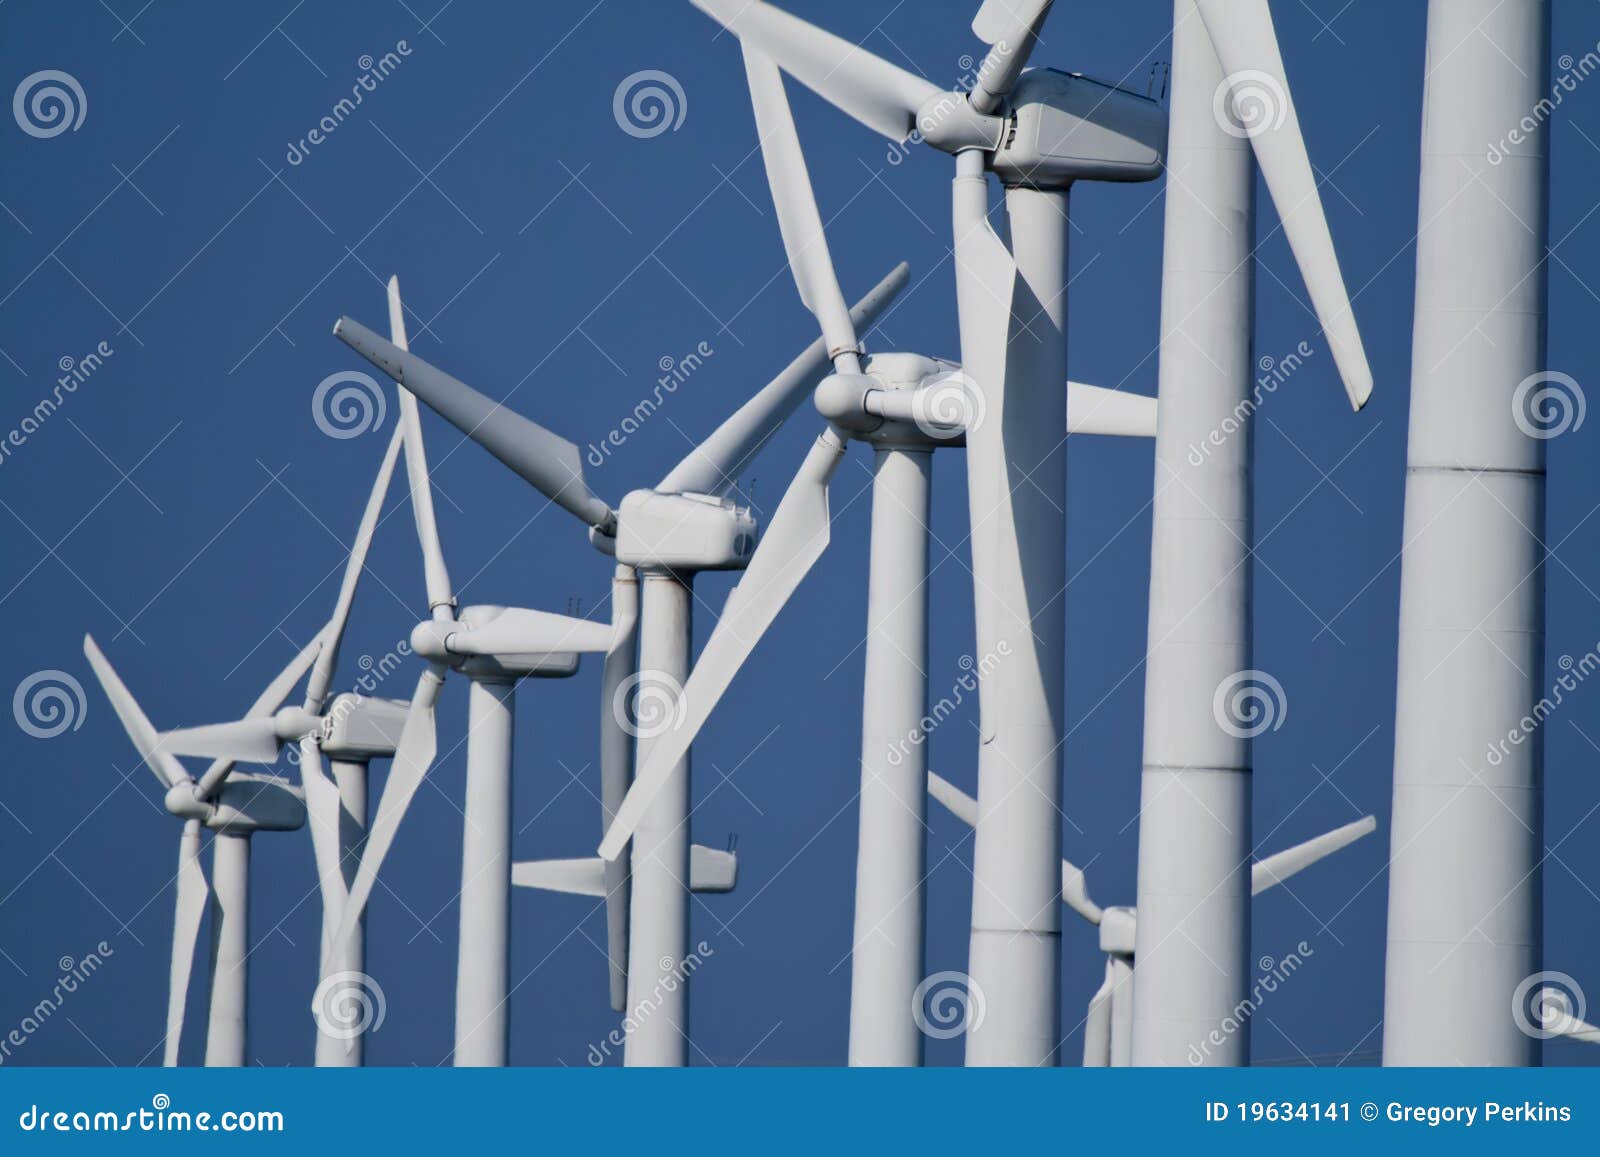 power generating wind turbines / windmills